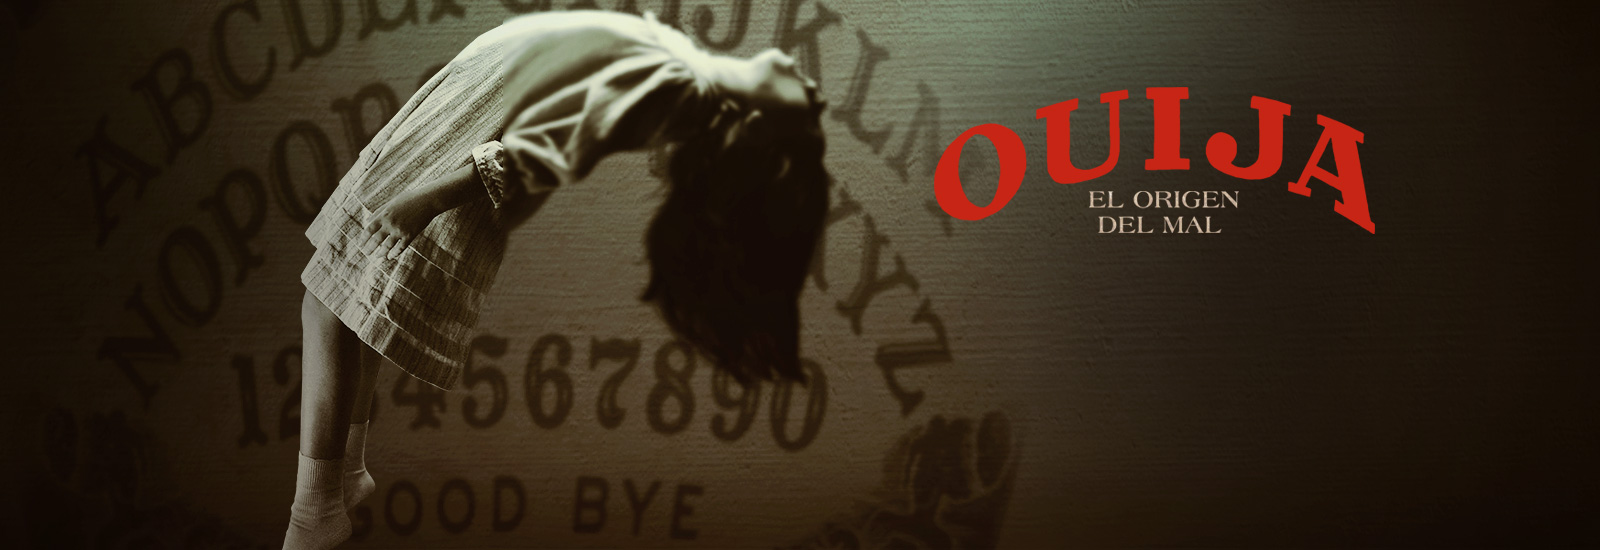 Ouija: El origen del mal en Cantones Cines de A Coruña